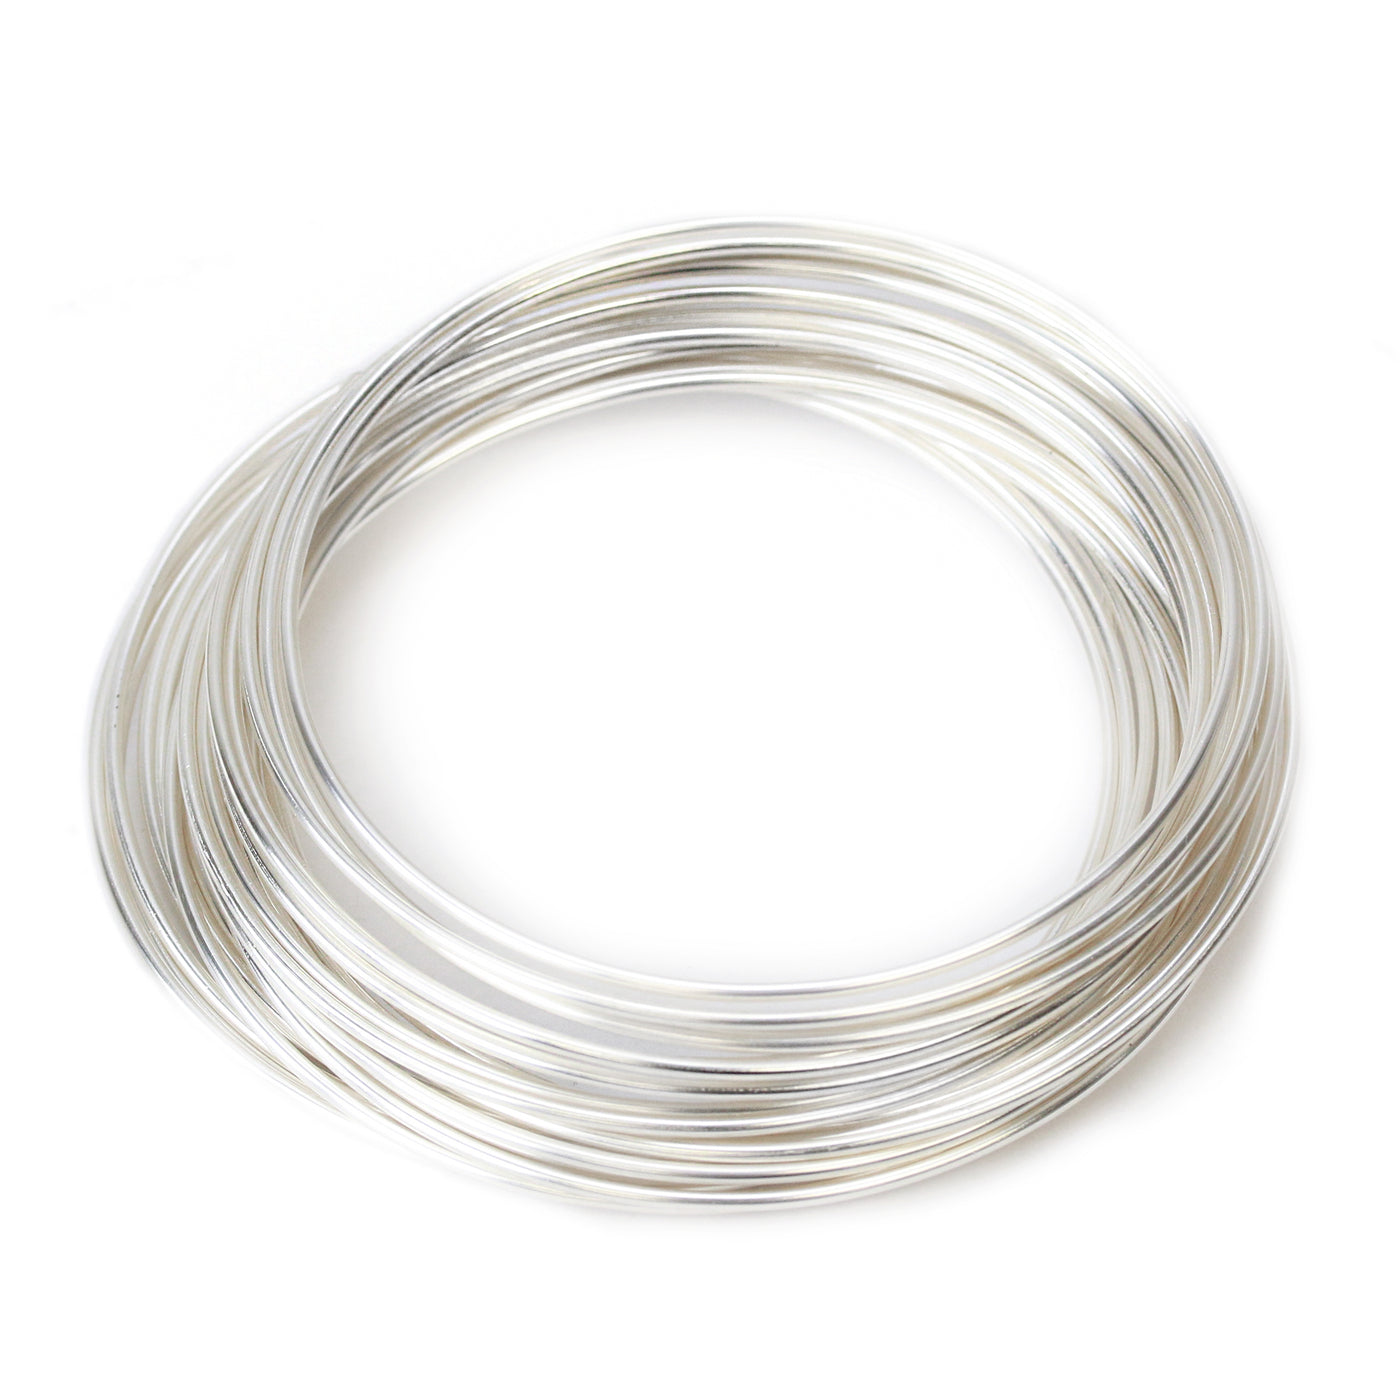 24 Gauge Round Dead Soft Nickel Silver Wire: Wire Jewelry